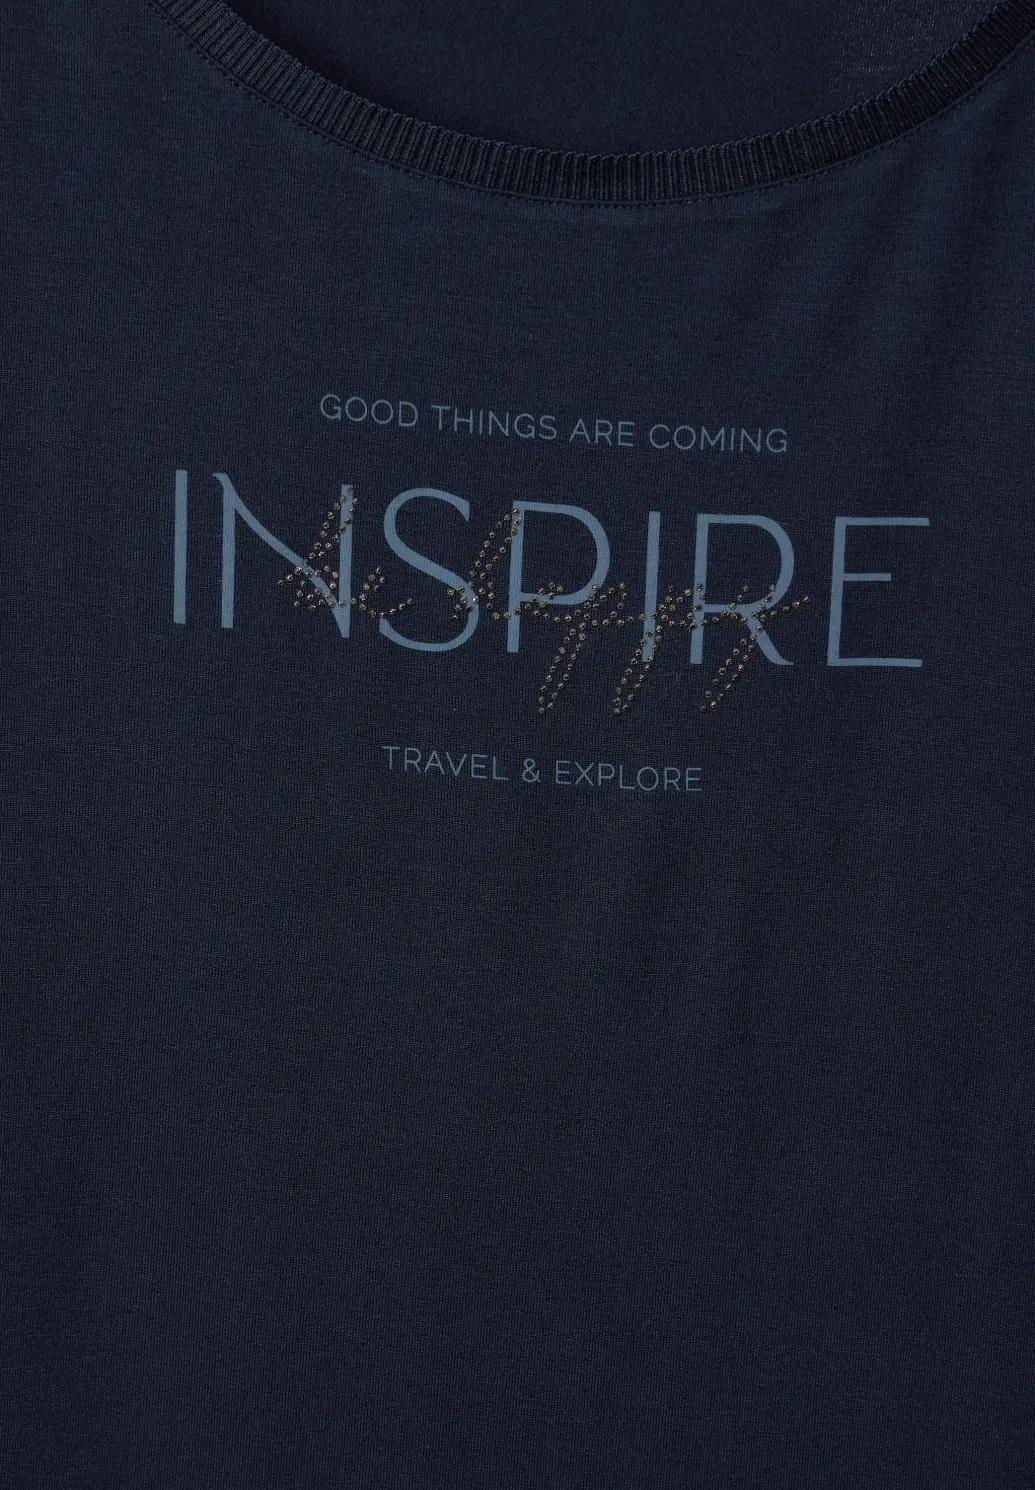 Street One tričko s nápisom INSPIRE, mod